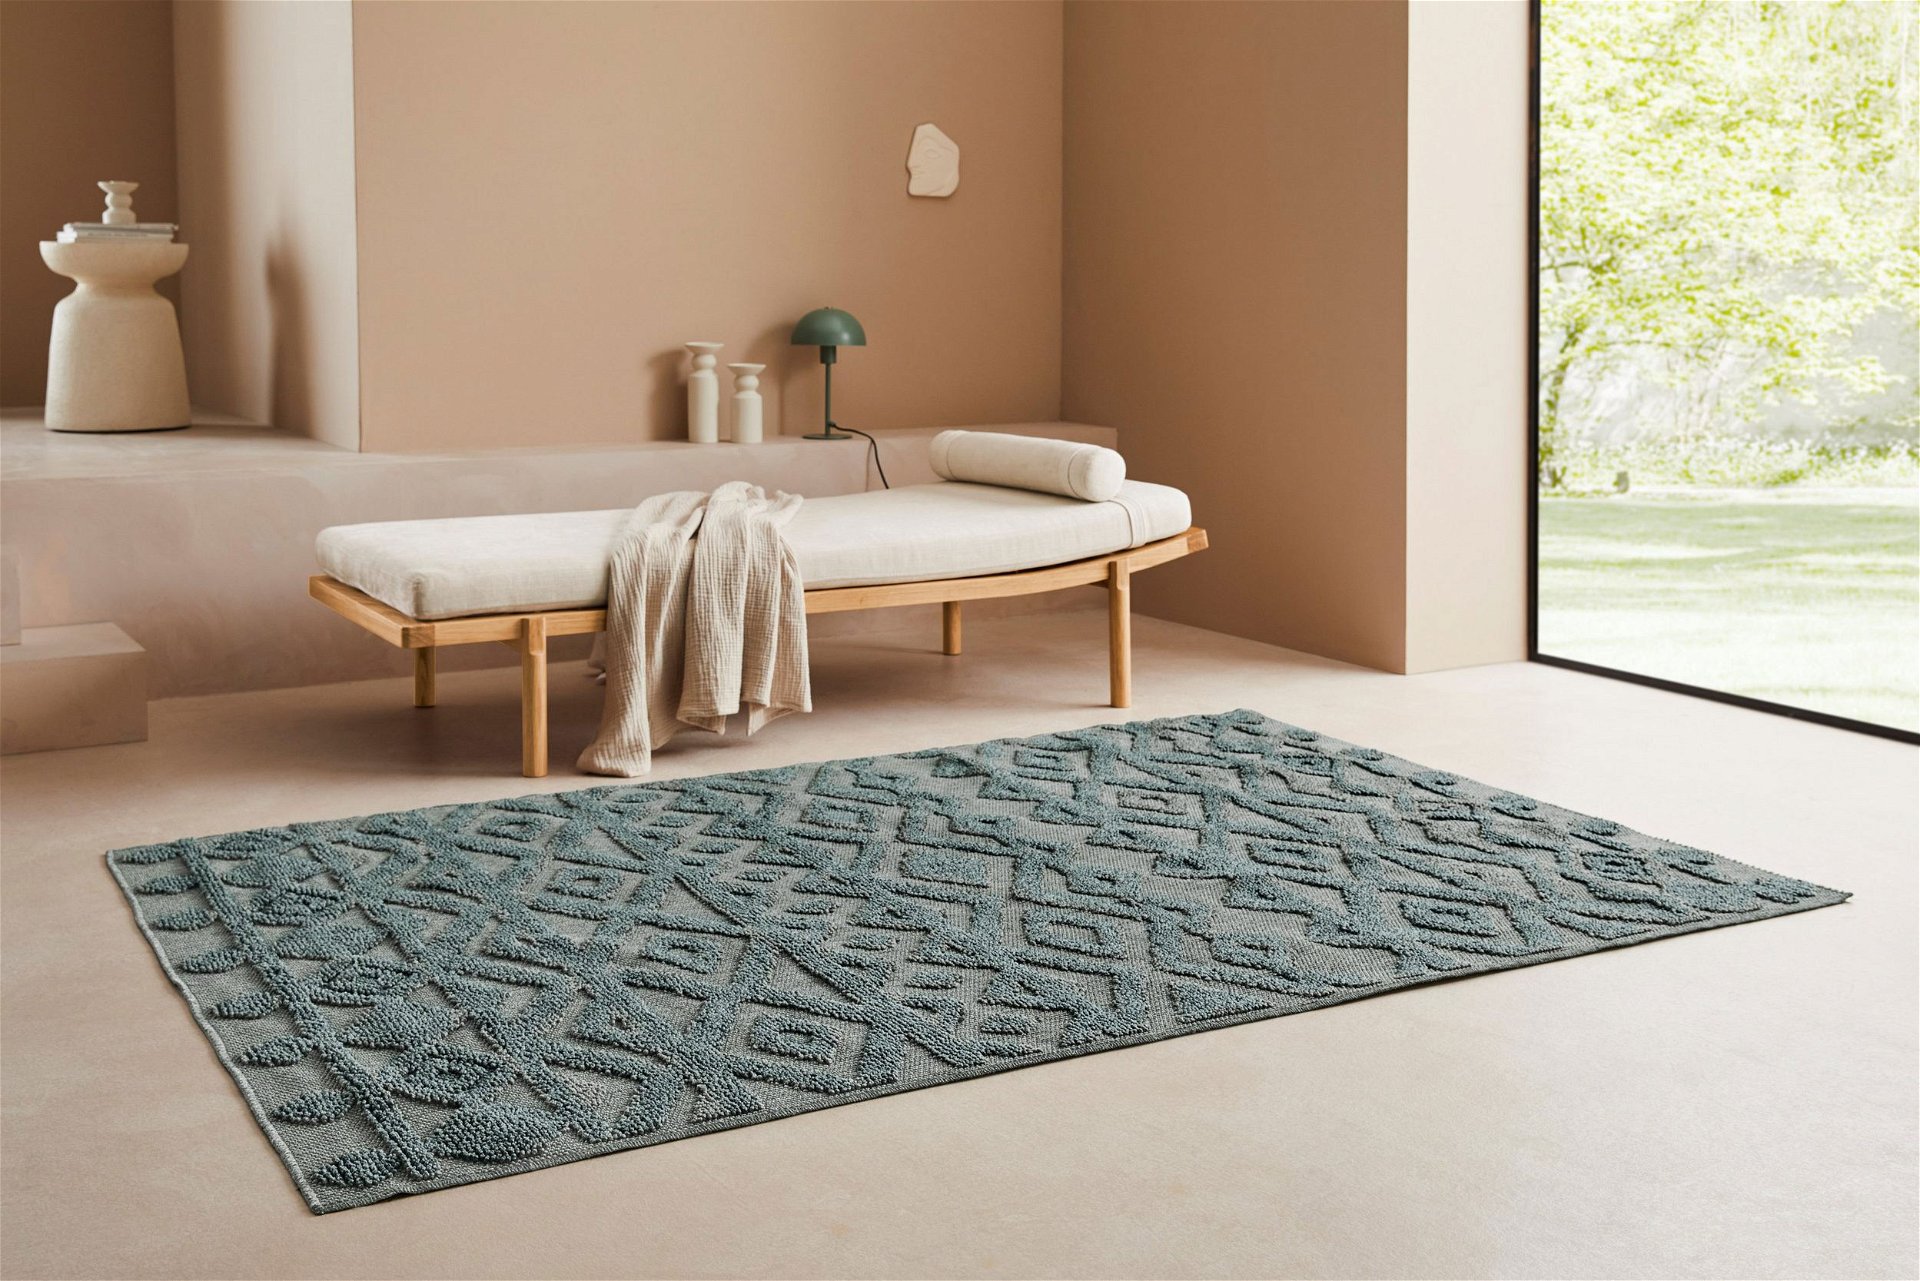 Der Teppich »Askja« mit Woll-Look verleiht der Einrichtung einen dekorativen Akzent. Er punktet im modernen Design und ist mit einem attraktiven Muster gestaltet. 